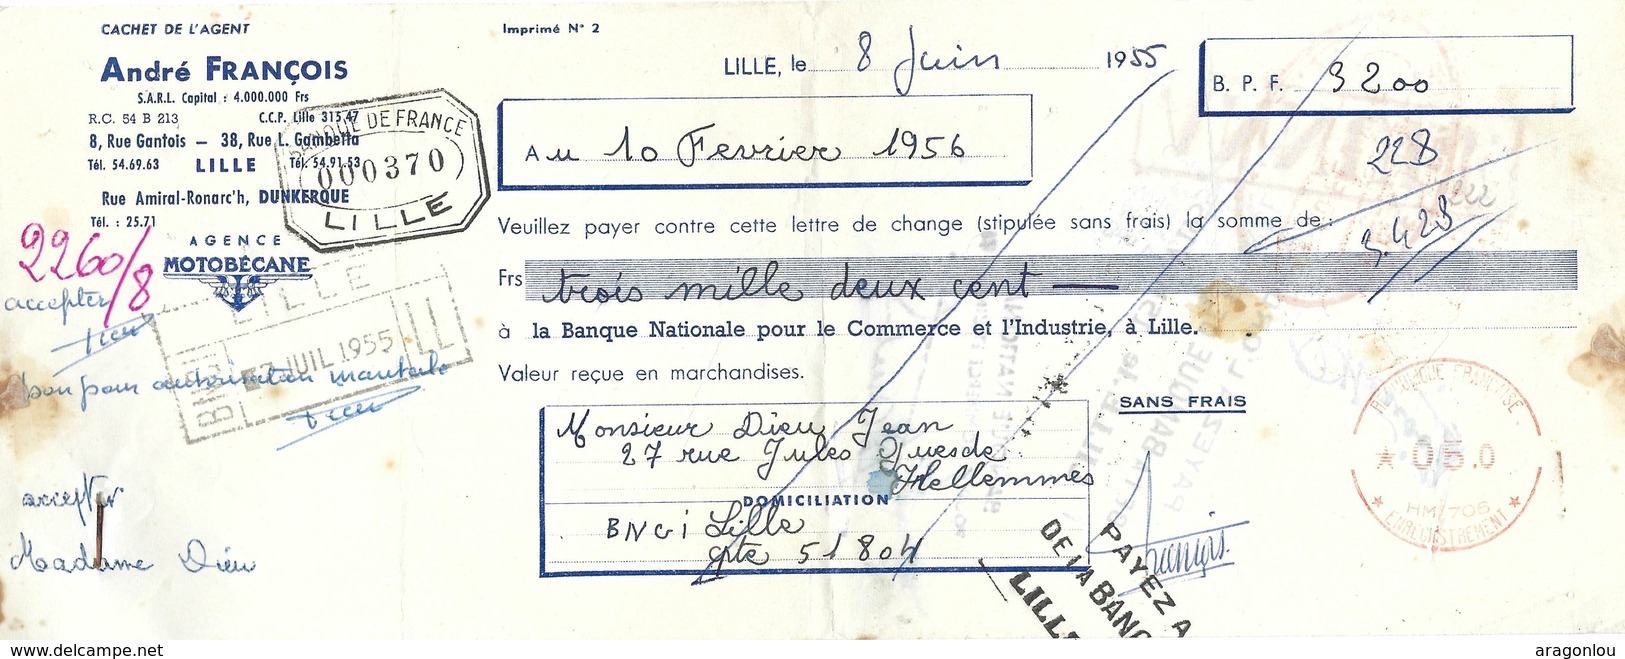 Lettre De Change Cachet André François Lille Du 8.6. 1955 Au 10.2. 1956 (2scans) - Lettres De Change